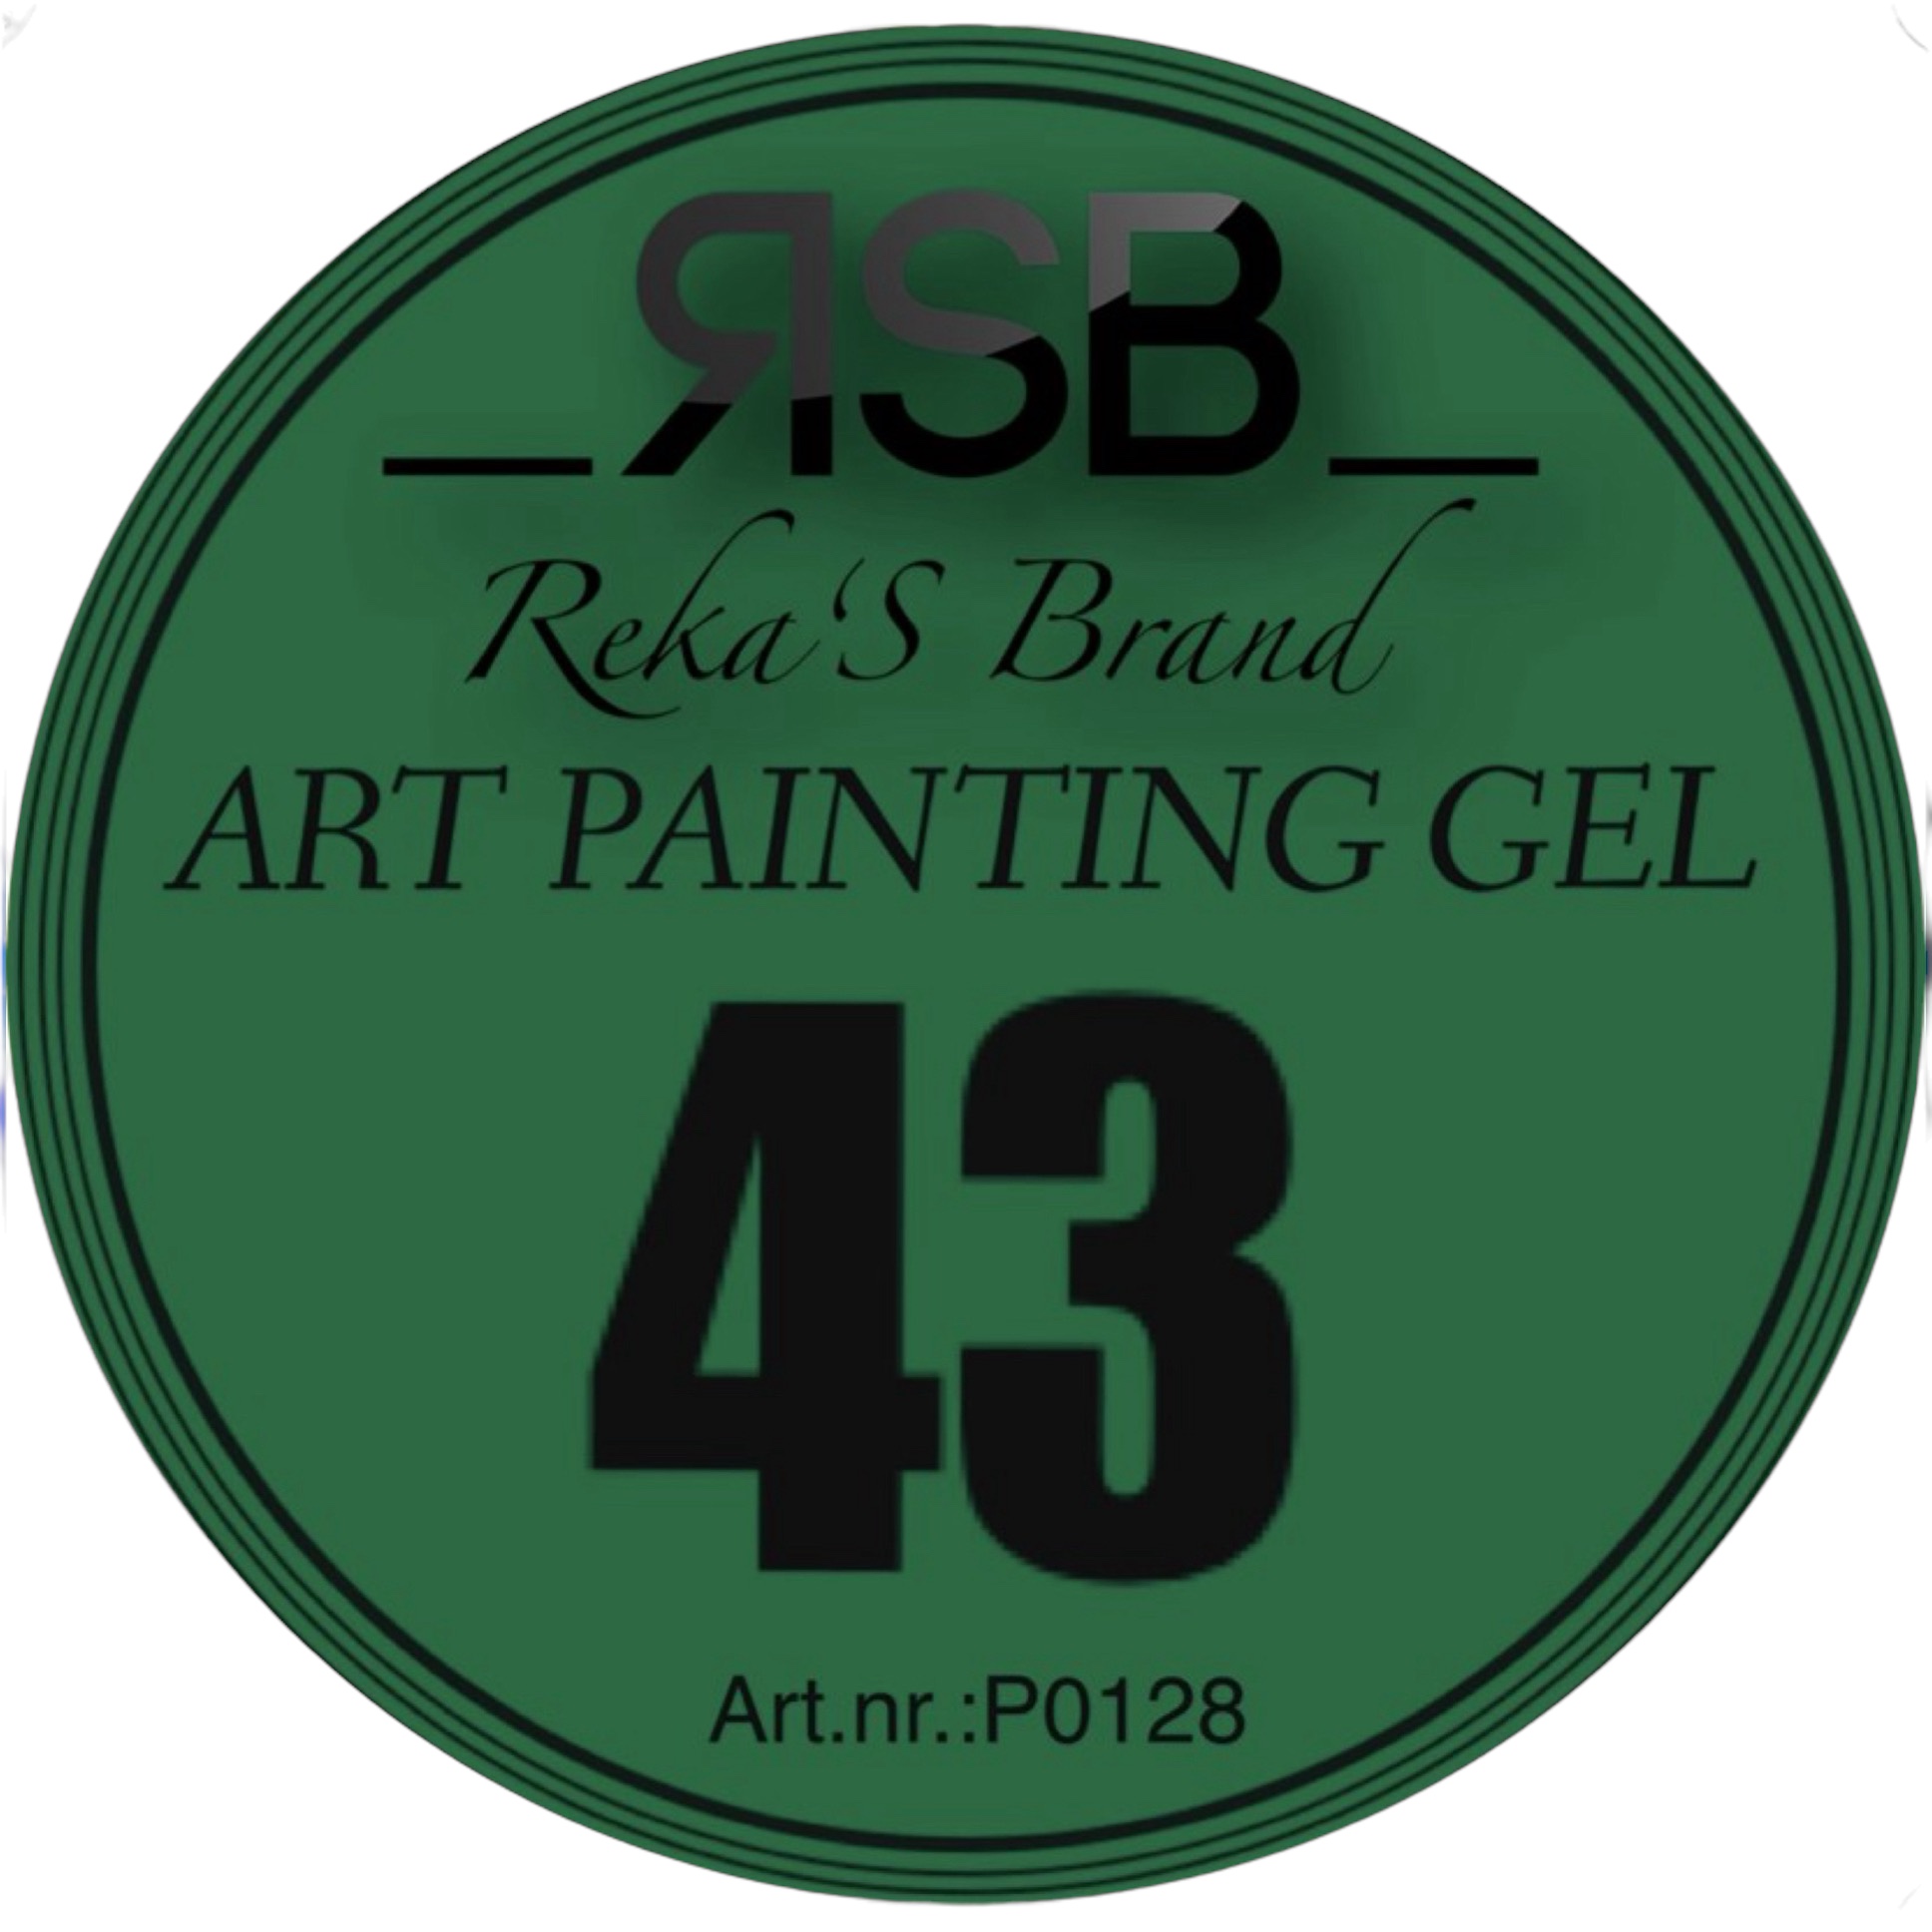 ART PAINTING GEL 43